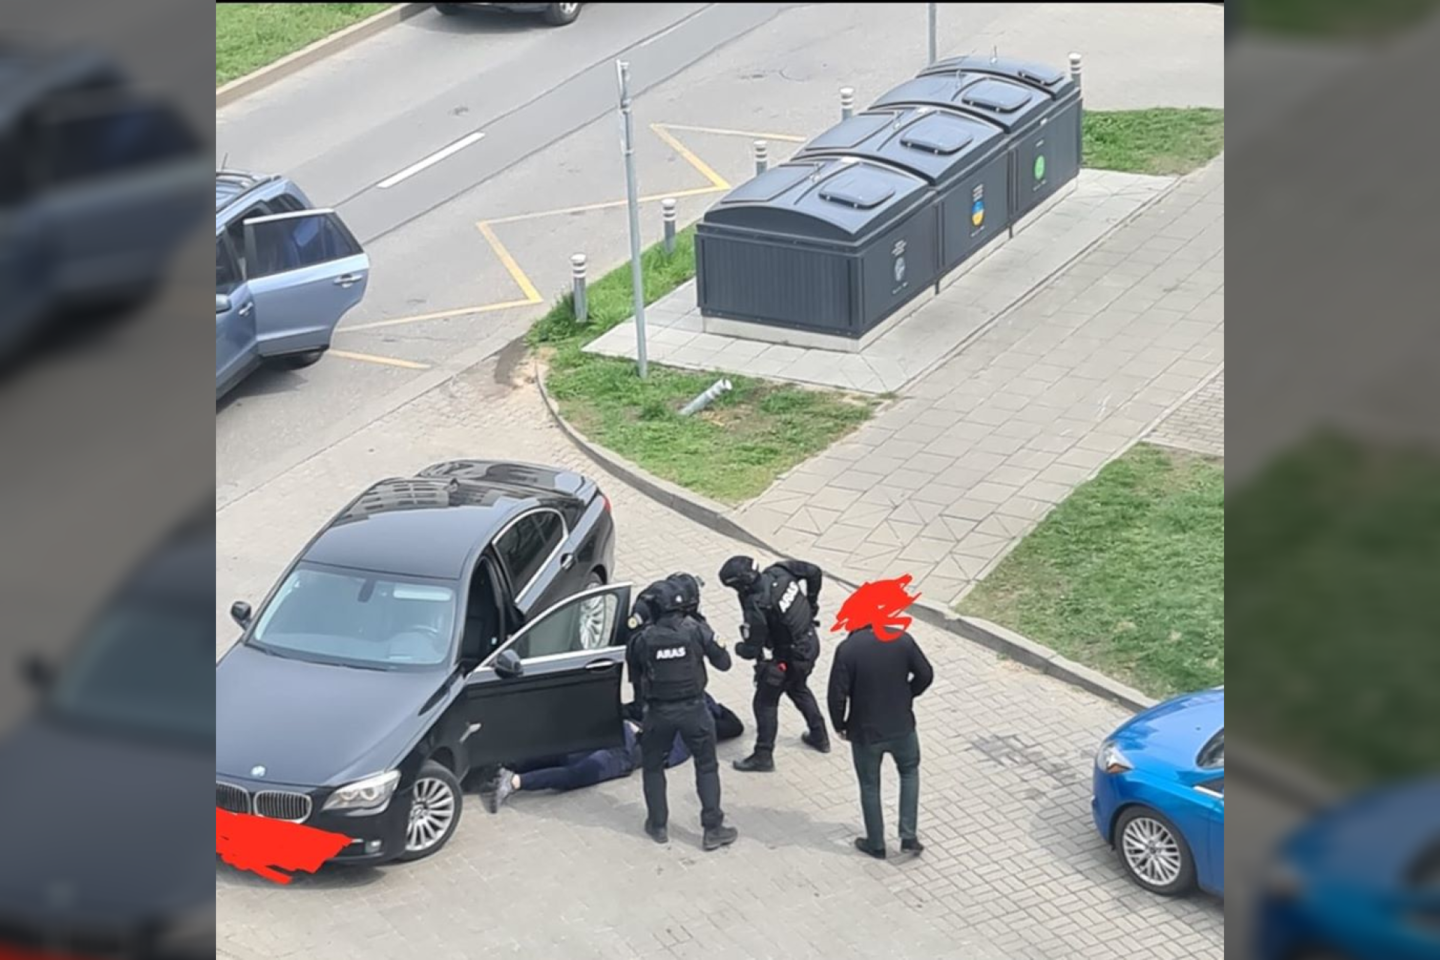  Teisme dėl "Jaguar" užpuolimo greitjkelyje prie Kauno parodymus jau davė trys iš penkių kaltinamųjų. Kaltinimai byloje yra pareikšti ir dainininkės K.Ivanovos draugui A.Mickui. <br> Policijos asociatyvioji nuotr. 